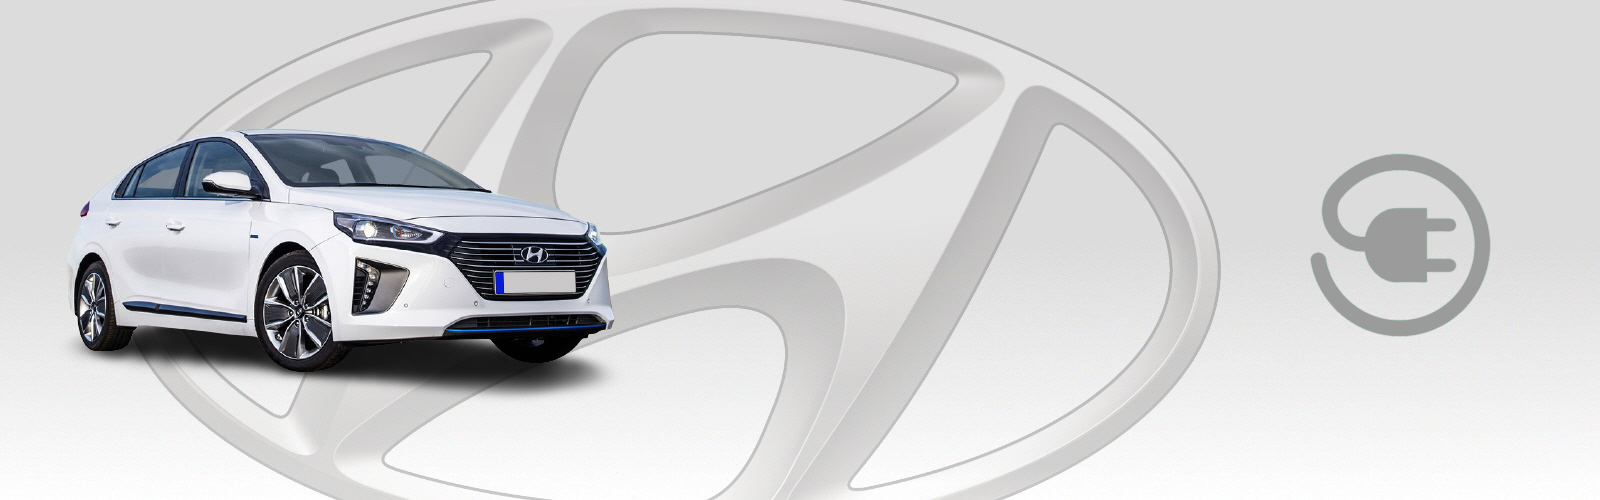 Hyundai Ioniq Plug-in Hybrid